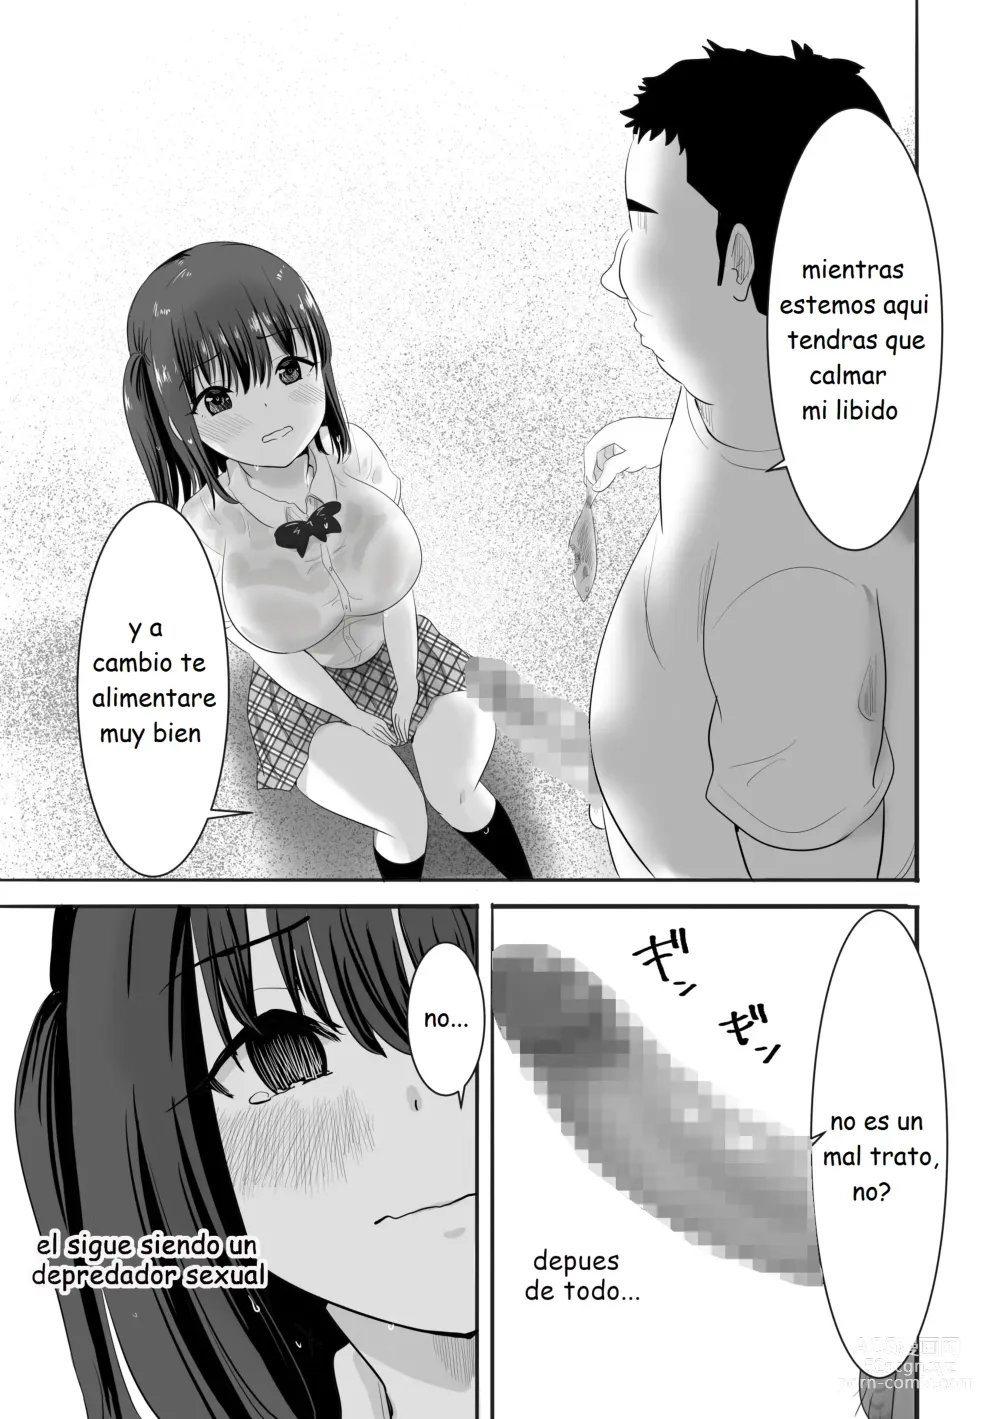 Page 12 of doujinshi Una chica con el uniforme mojada vive sola en una isla desierta con un profesor que la acosa sexualmente